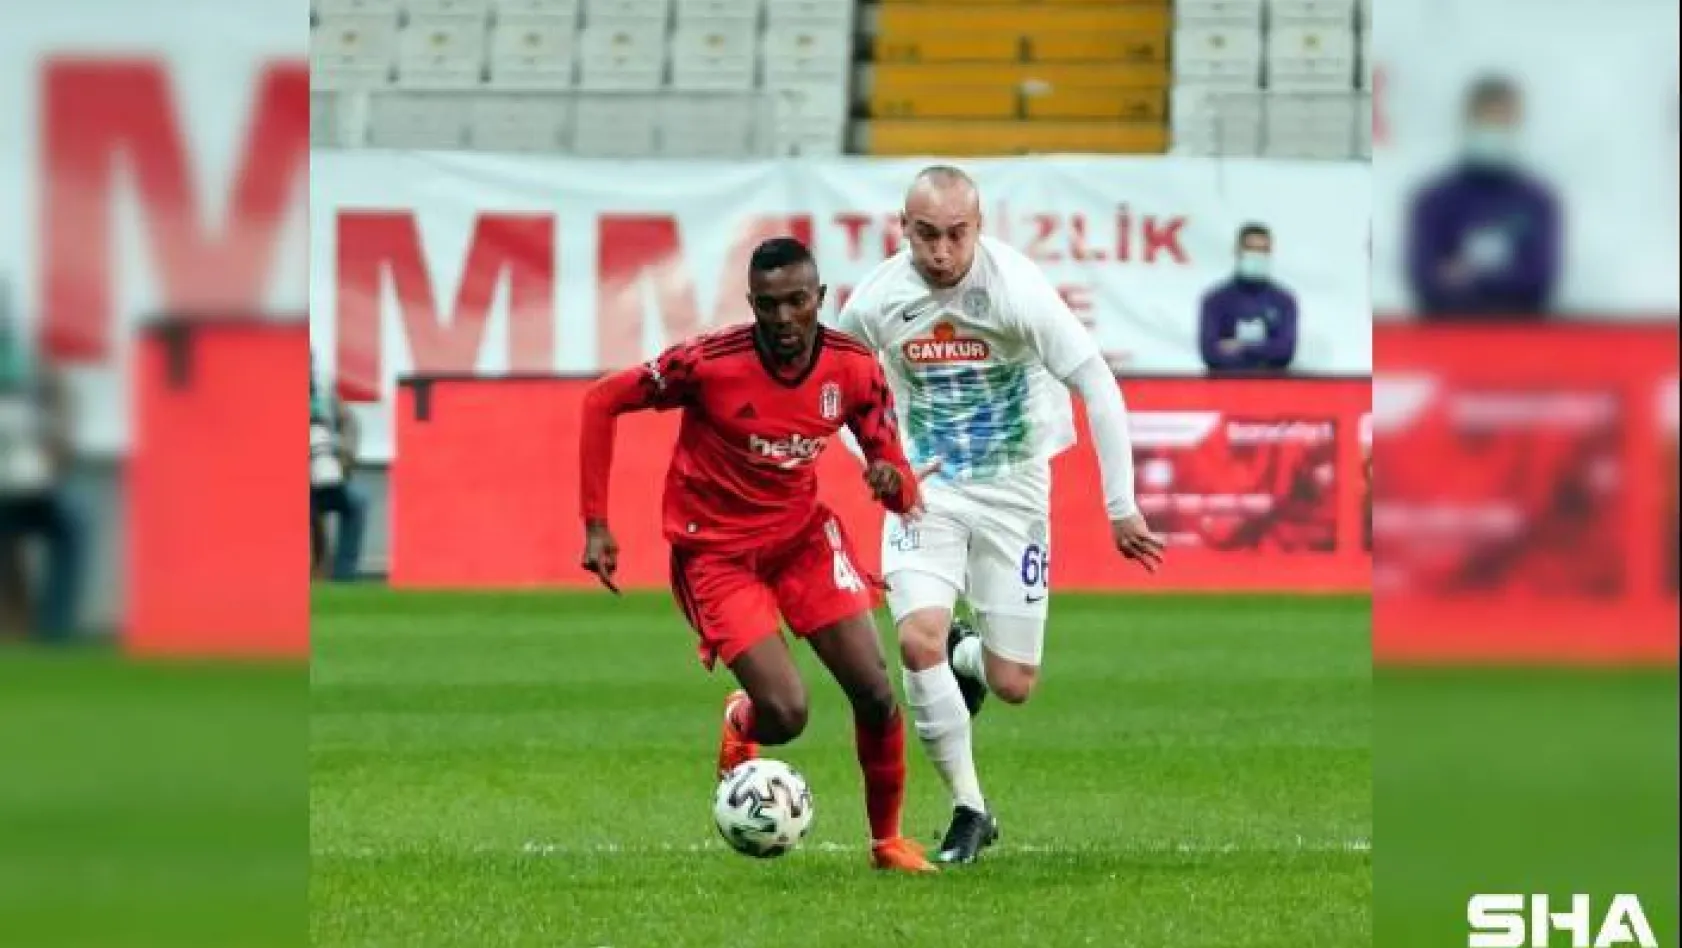 Ziraat Türkiye Kupası: Beşiktaş: 0 - Çaykur Rizespor: 0 (Maç devam ediyor)